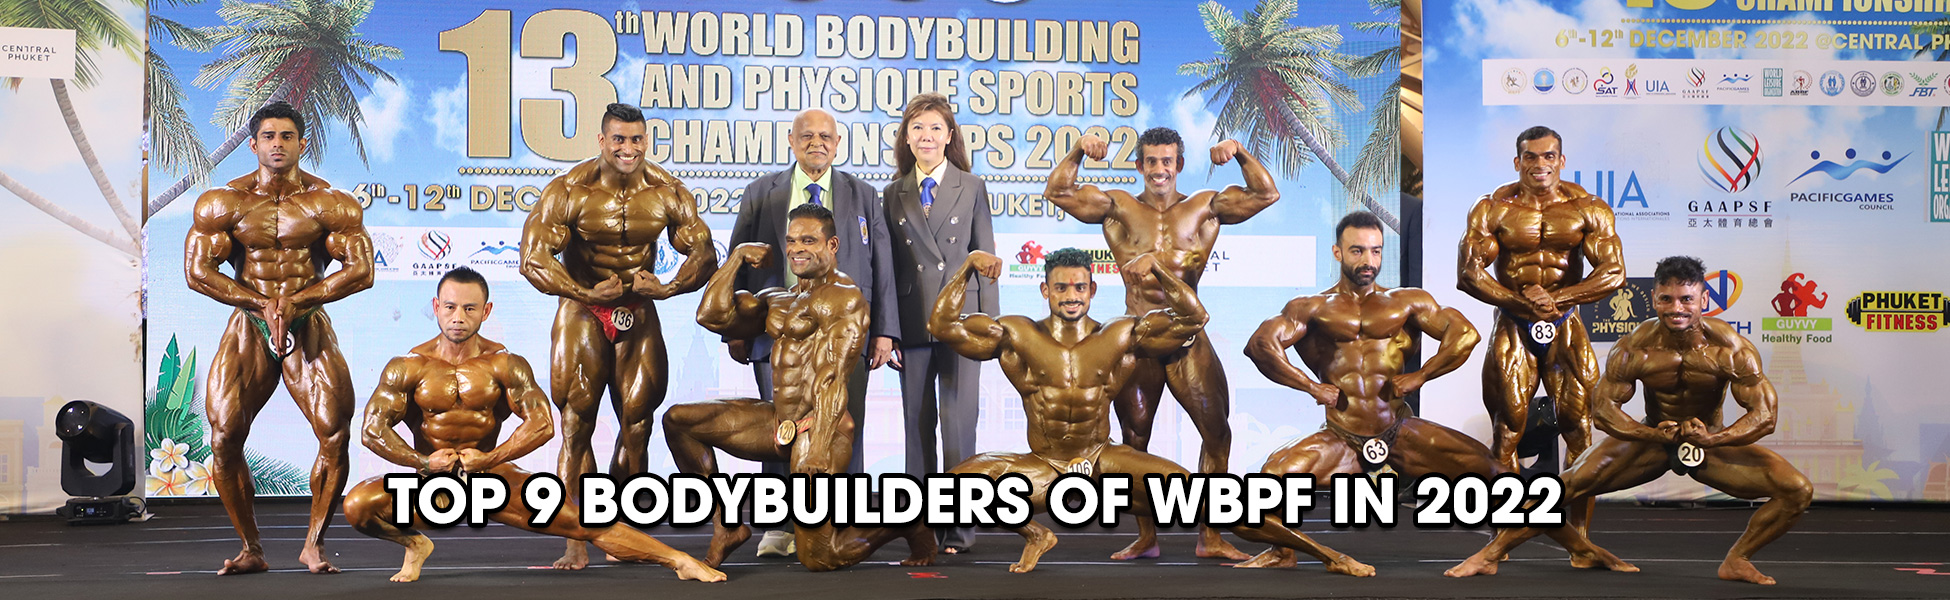 TOP 9 BODYBUILDERS OF WBPF IN 2022